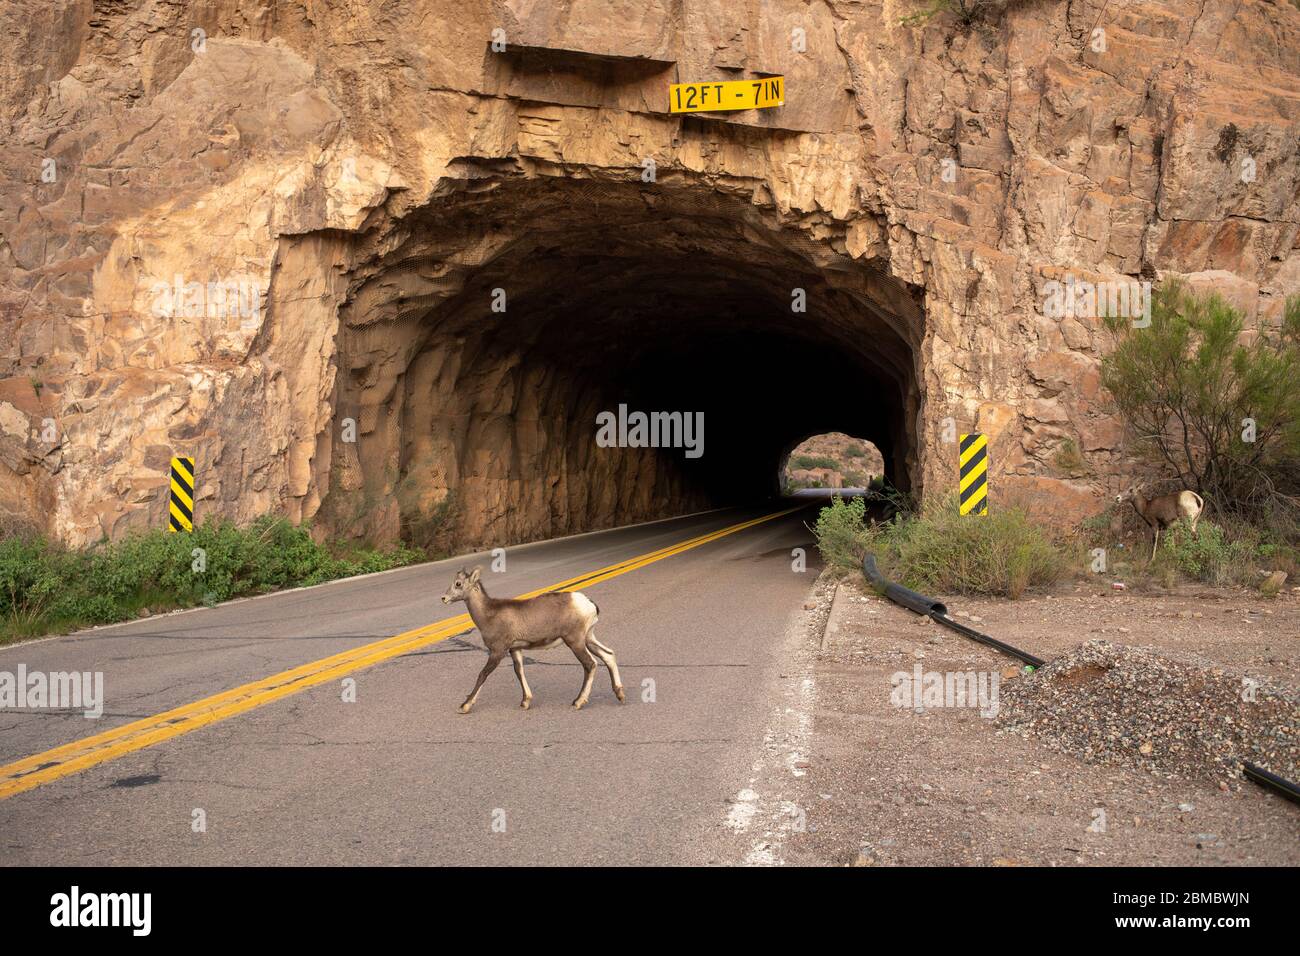 Un bébé grand mouton de corne traverse une route menant à une entrée de tunnel Banque D'Images